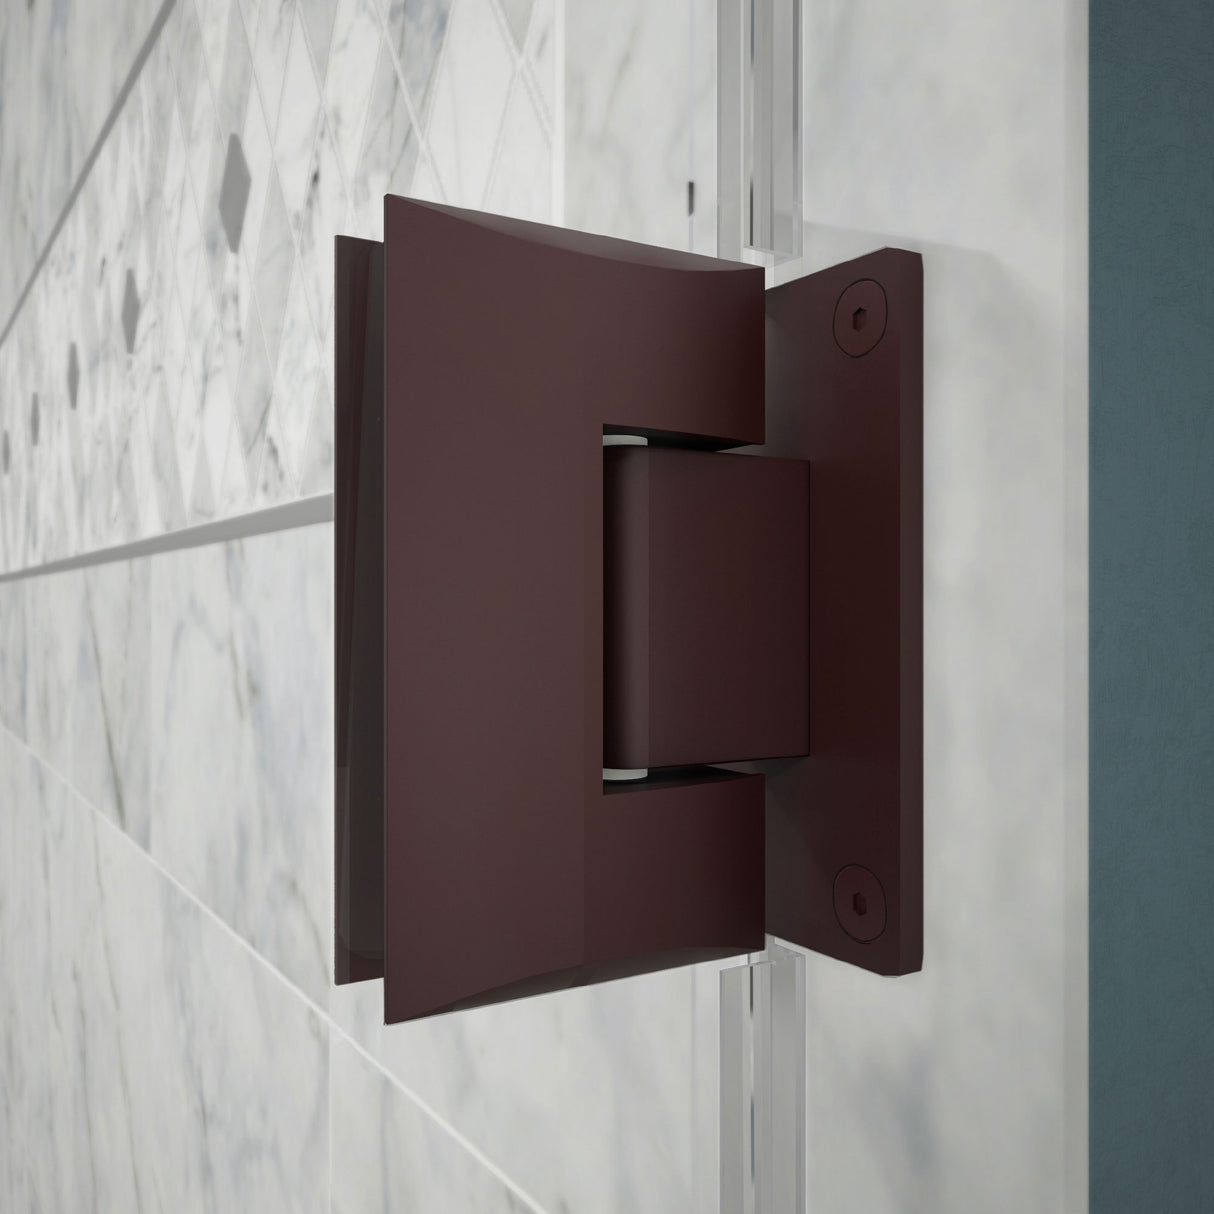 DreamLine Unidoor Plus 58-58 1/2 in. W x 72 in. H Frameless Hinged Shower Door with 36 in. Half Panel in Oil Rubbed Bronze